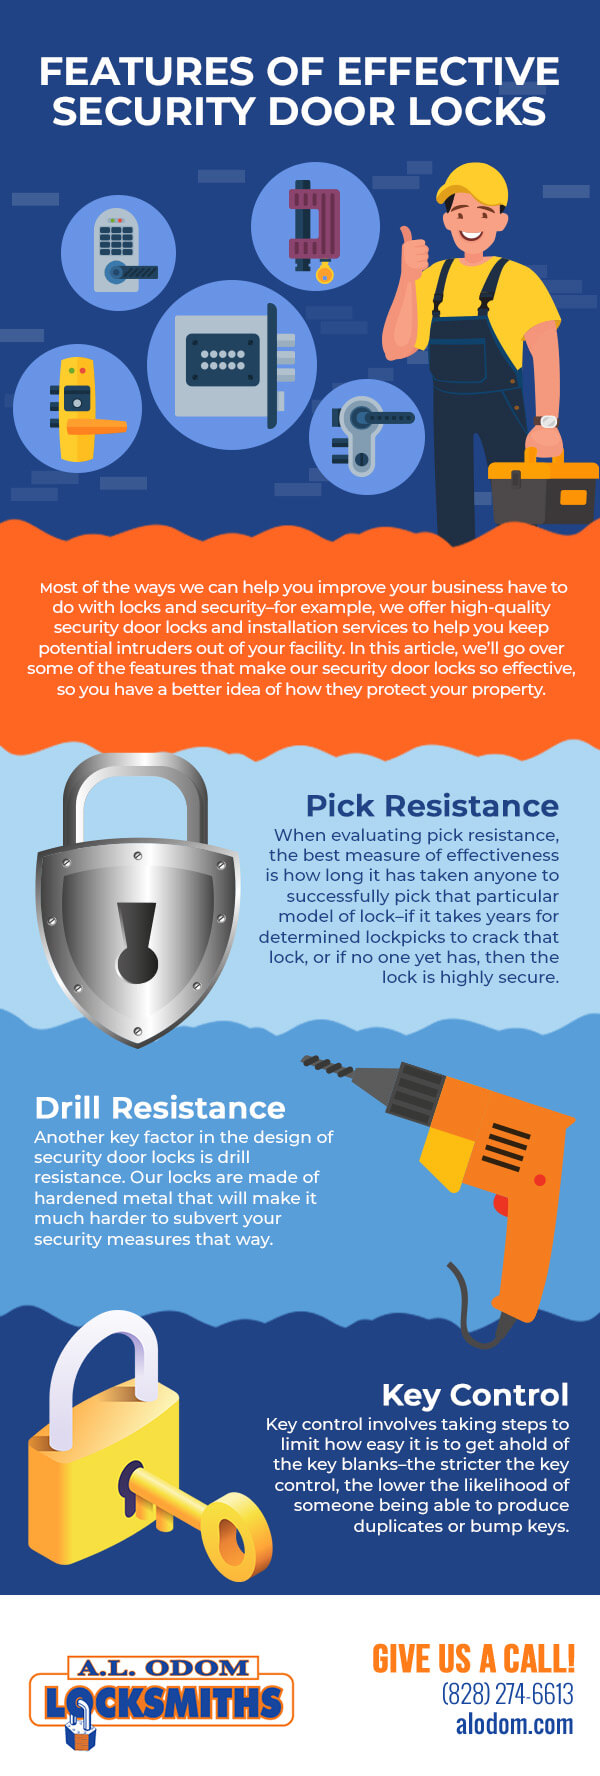 Features of Effective Security Door Locks